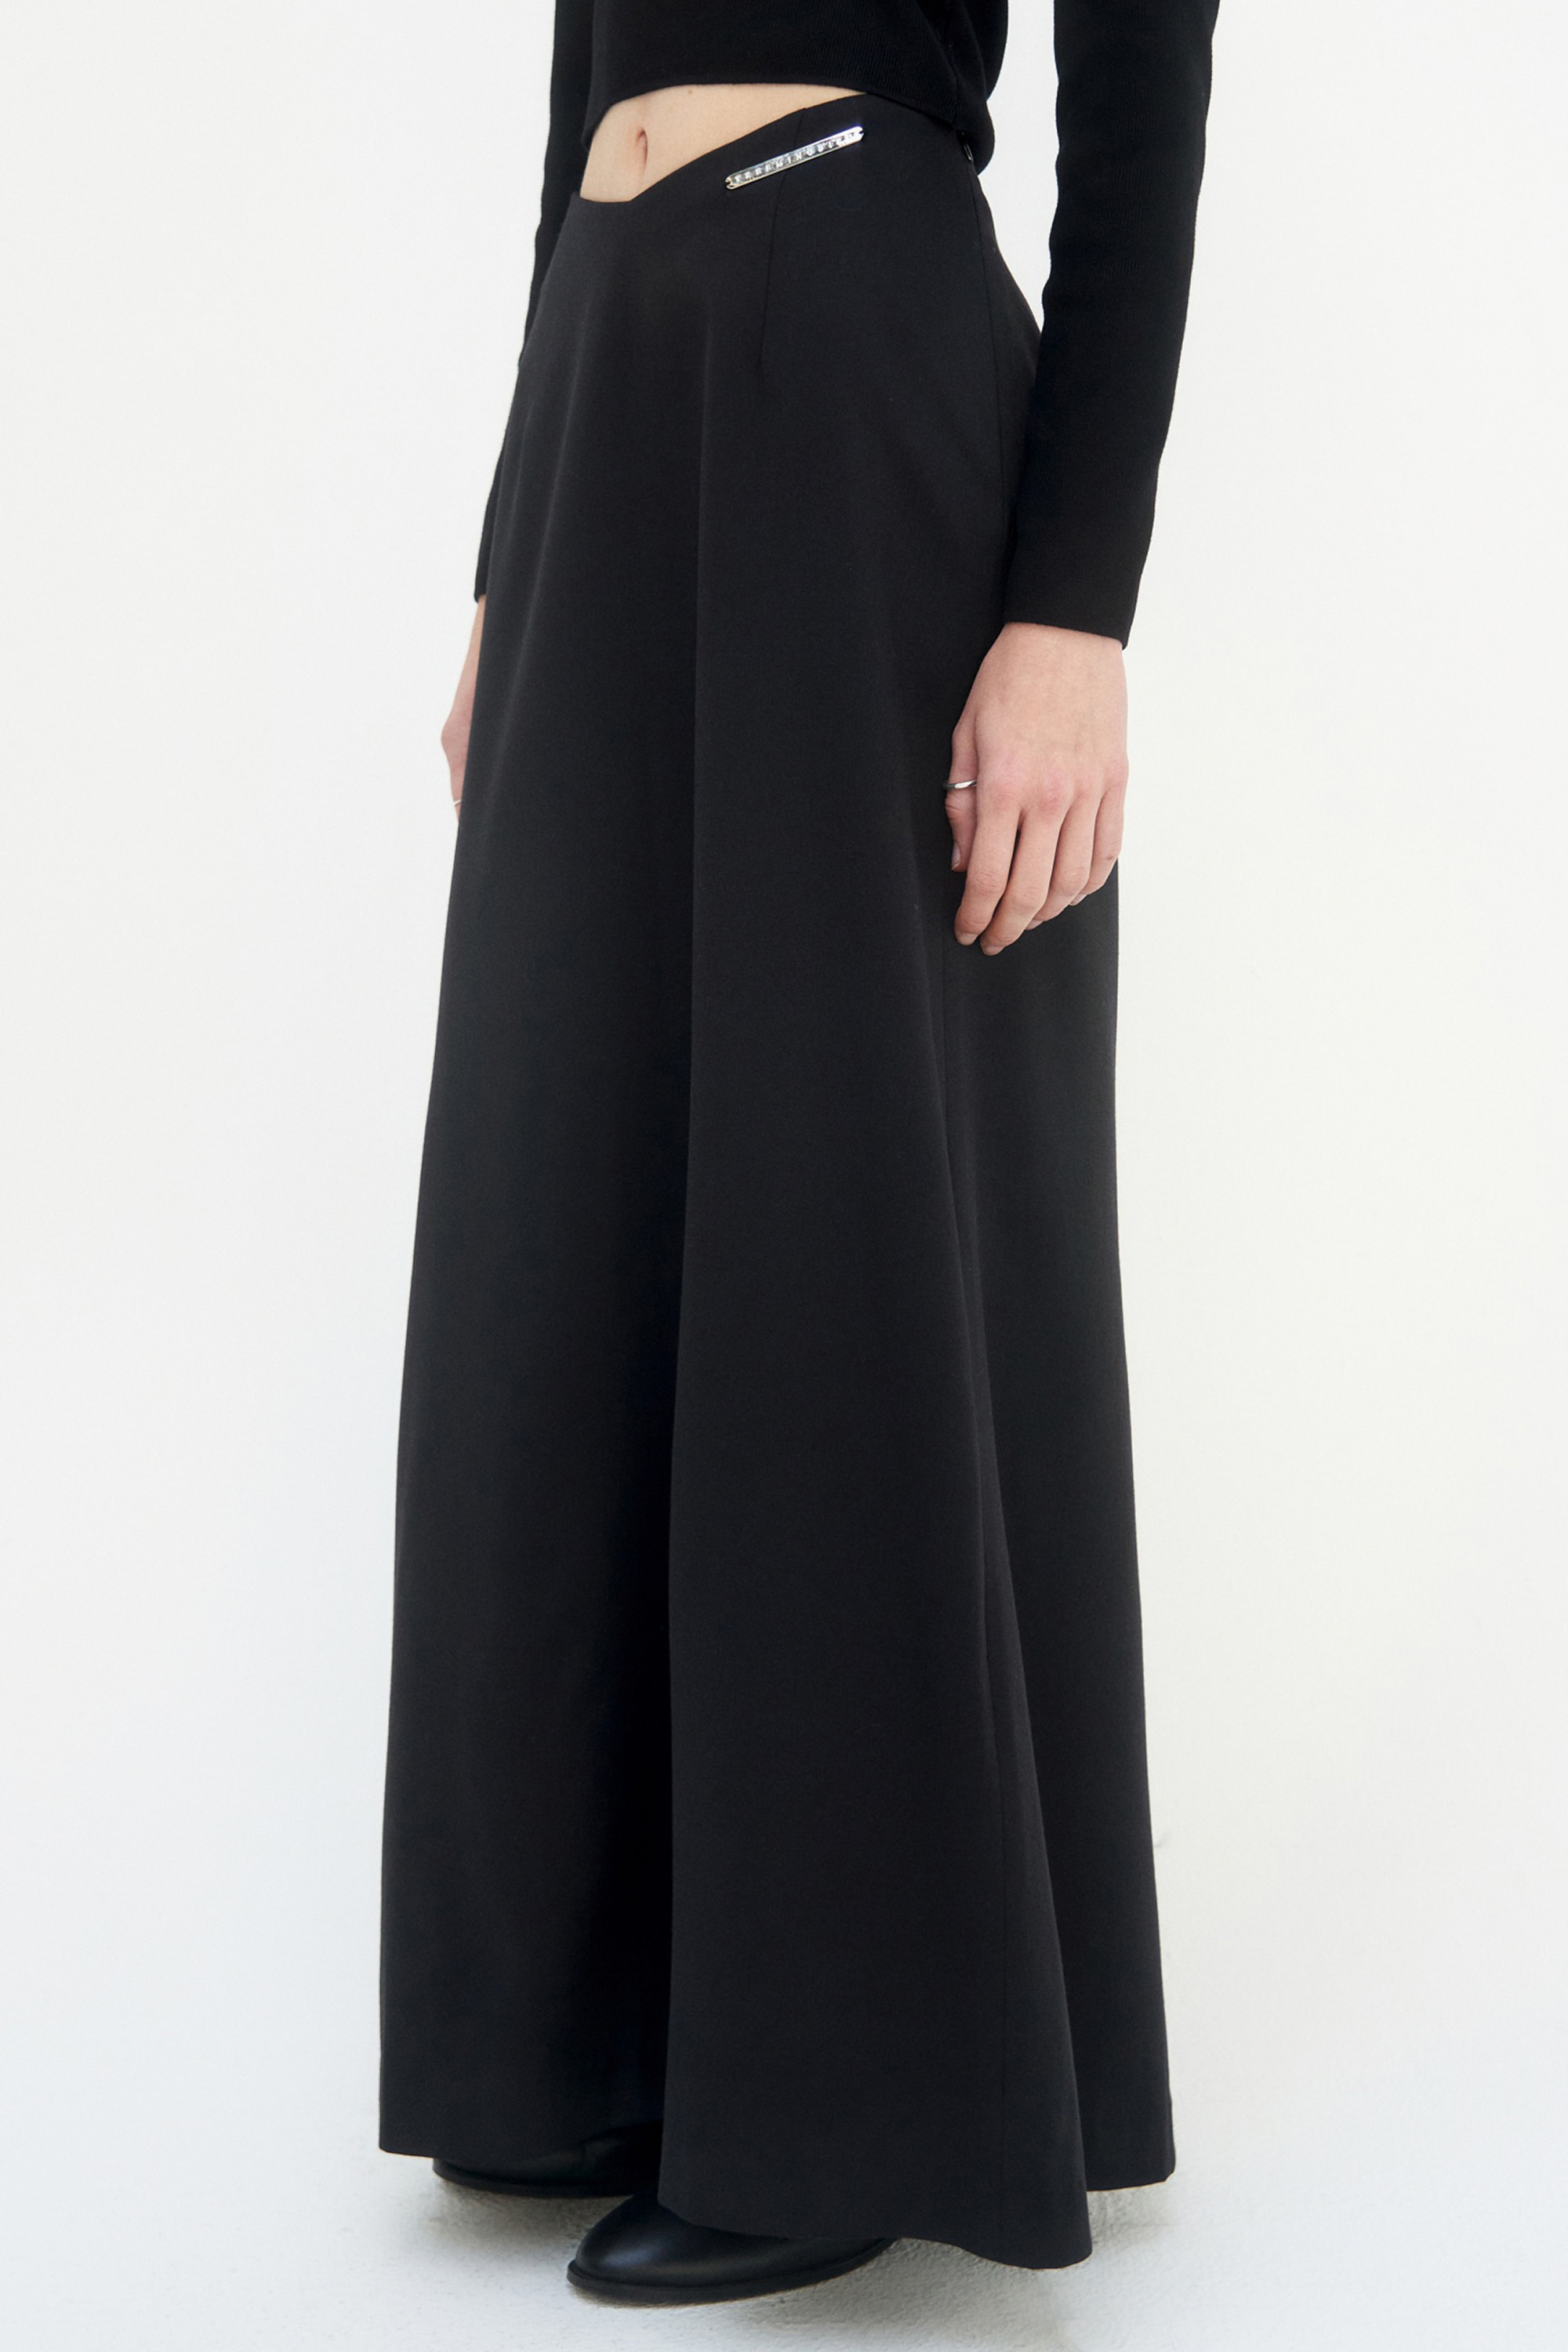 V Low-Waist Long Skirt [ Black ]